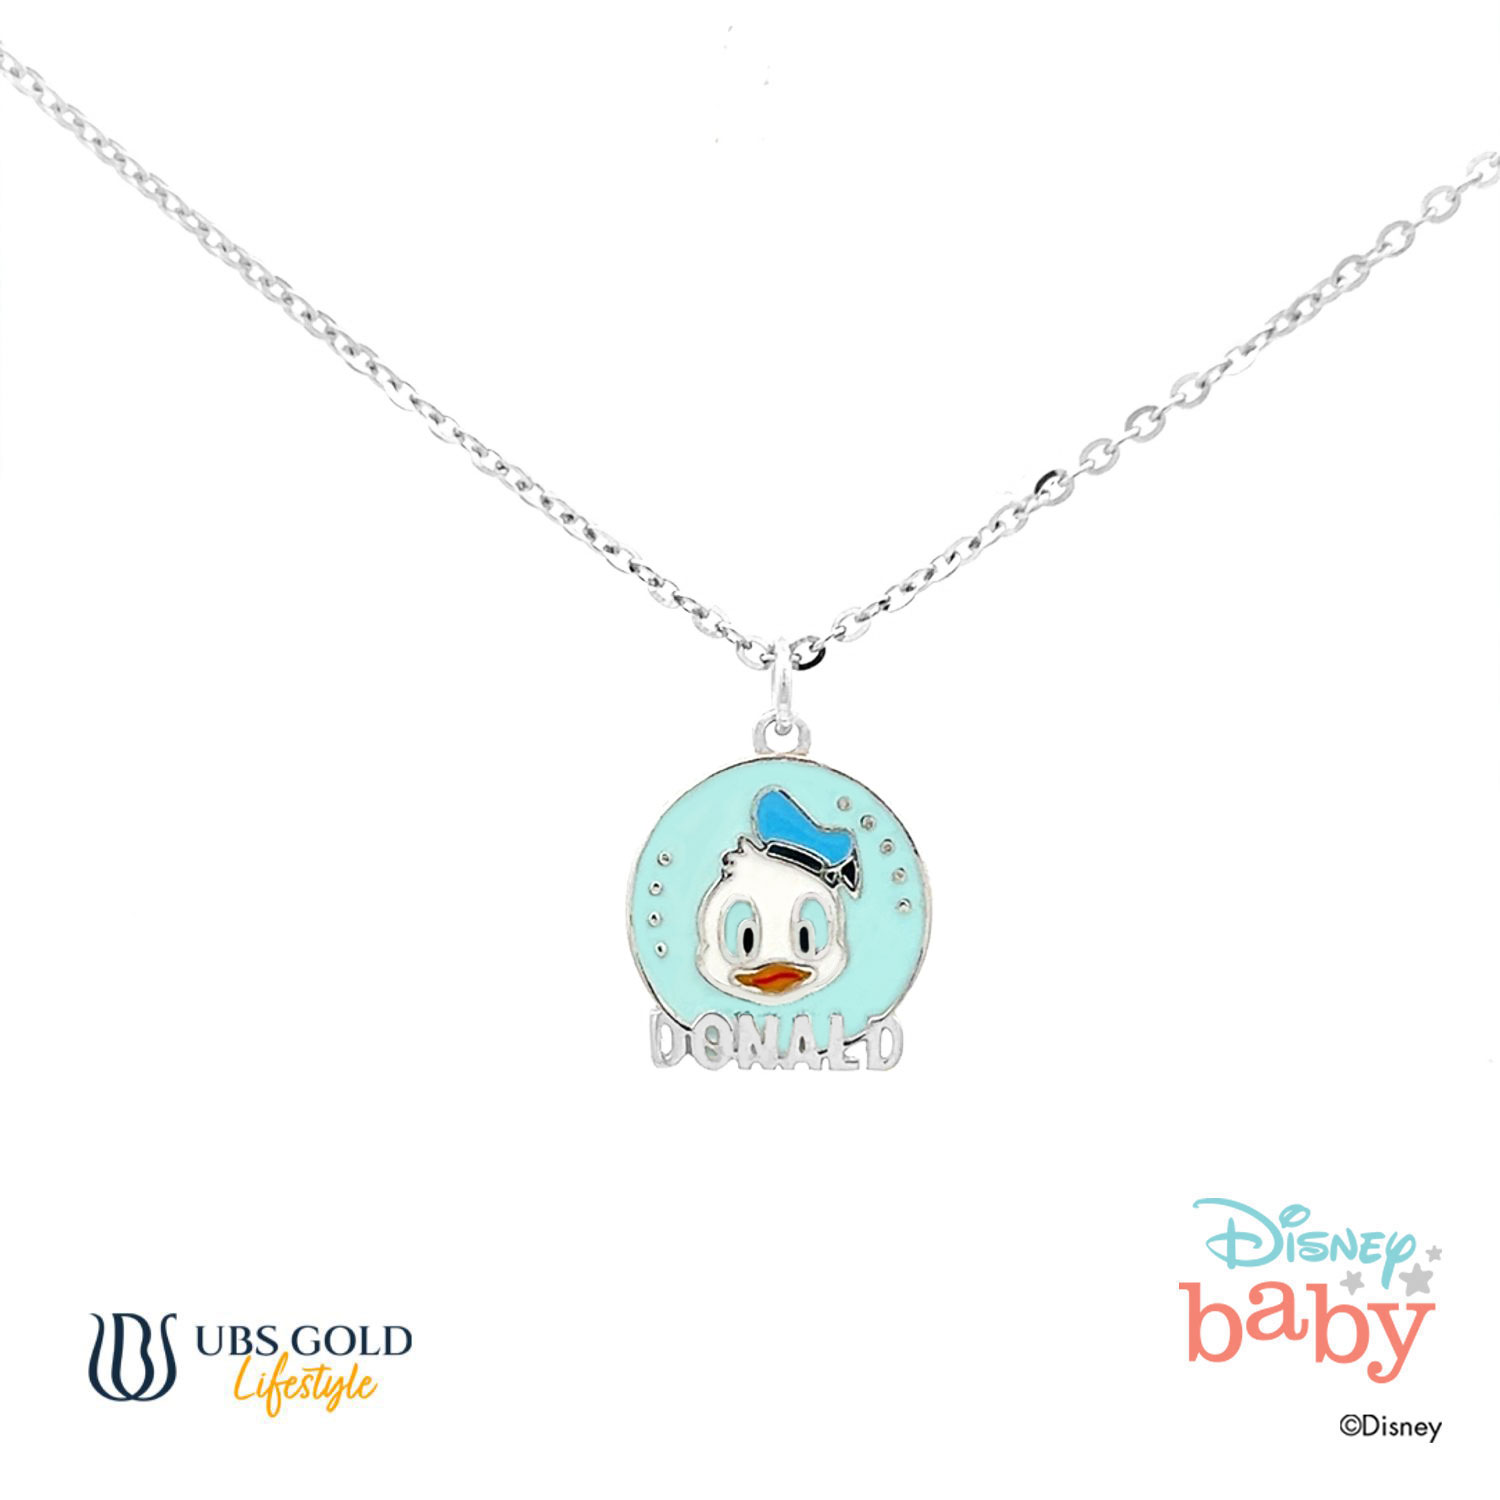 UBS Gold Kalung Emas Anak Disney Donald Duck - Kky0088 - 17K